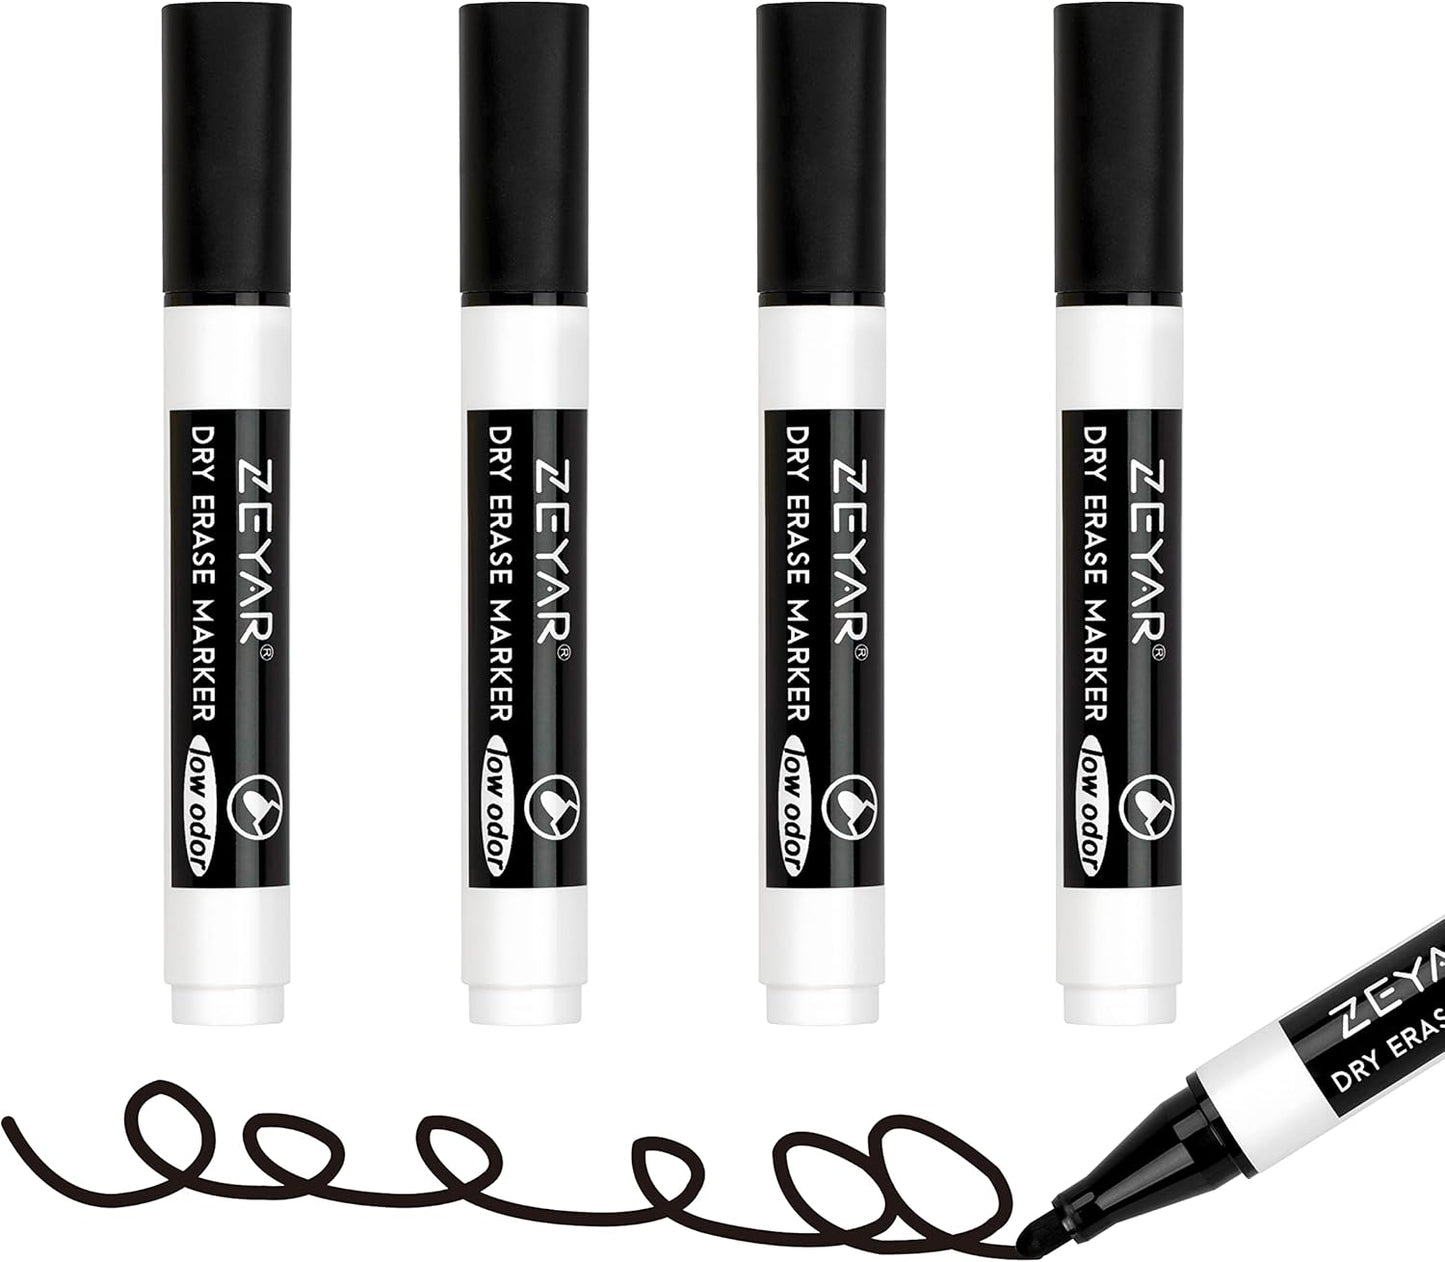 Low Odor Dry Erase Marker, Bullet Tip White Board Marker, 4 Count (4 Black)